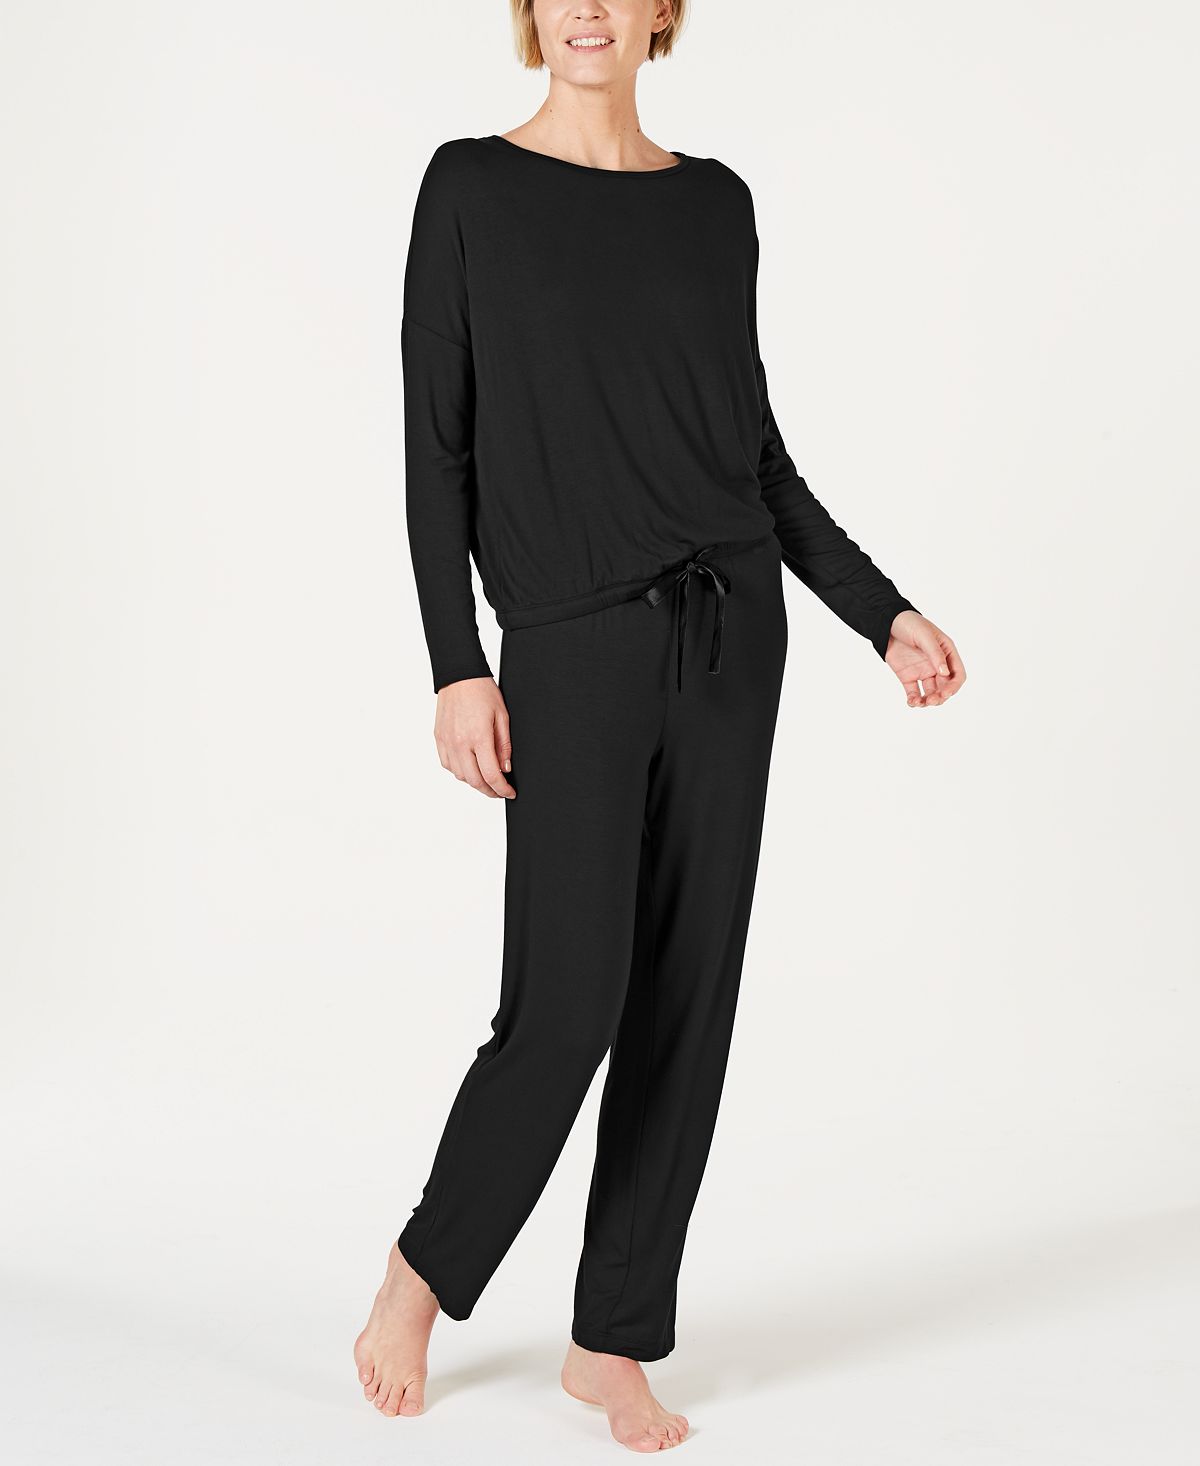 Alfani Ultra Soft Long-sleeve Top And Pant Set Classic Black